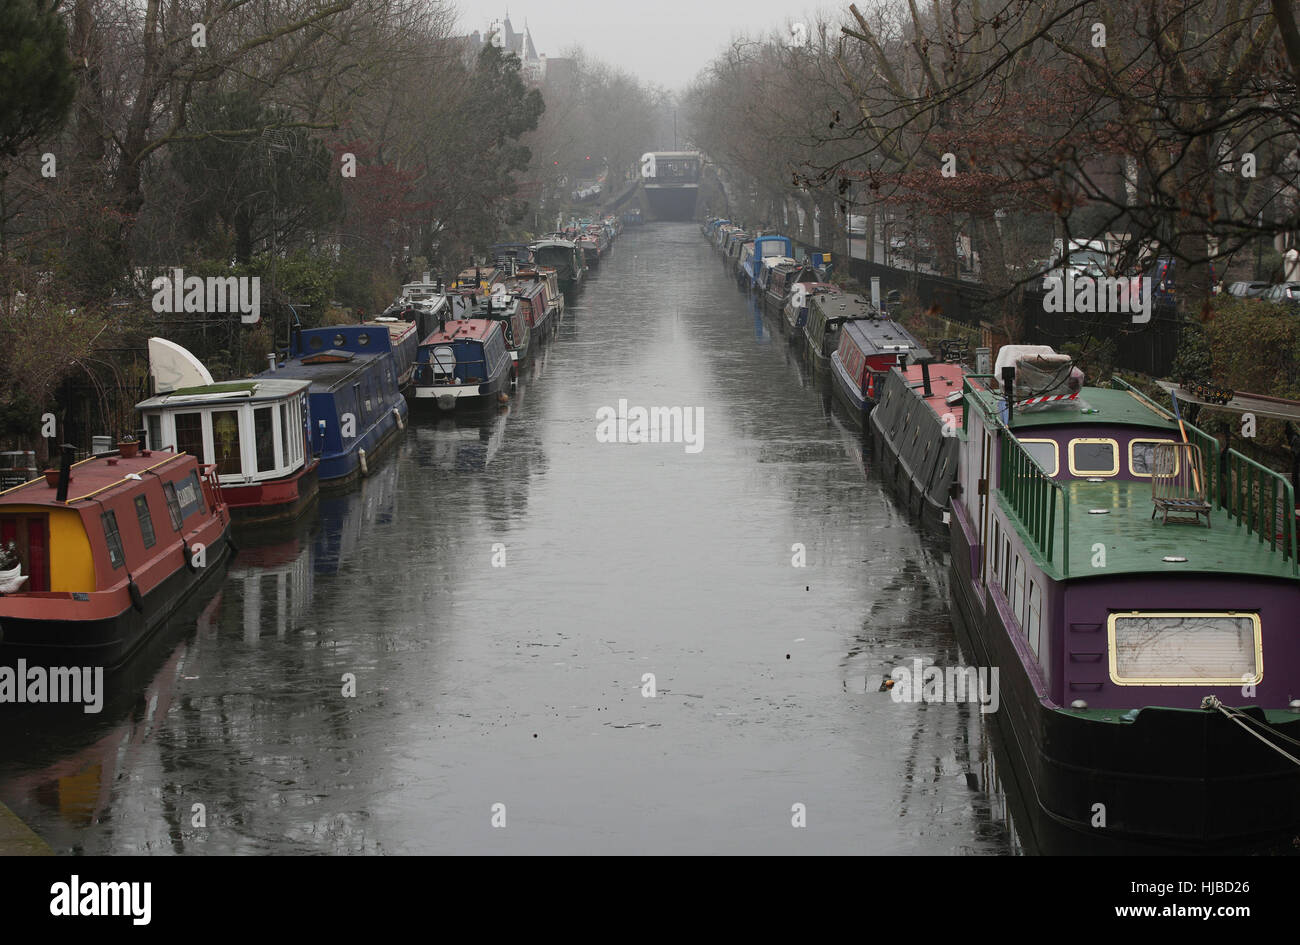 Die Eisfläche des Grand Union Canal in Klein-Venedig, London, als Dichter Nebel verursacht Reisen Störung über Südengland, mit Tausenden von Fluggästen gegenüber Annullierungen und Verspätungen. Stockfoto